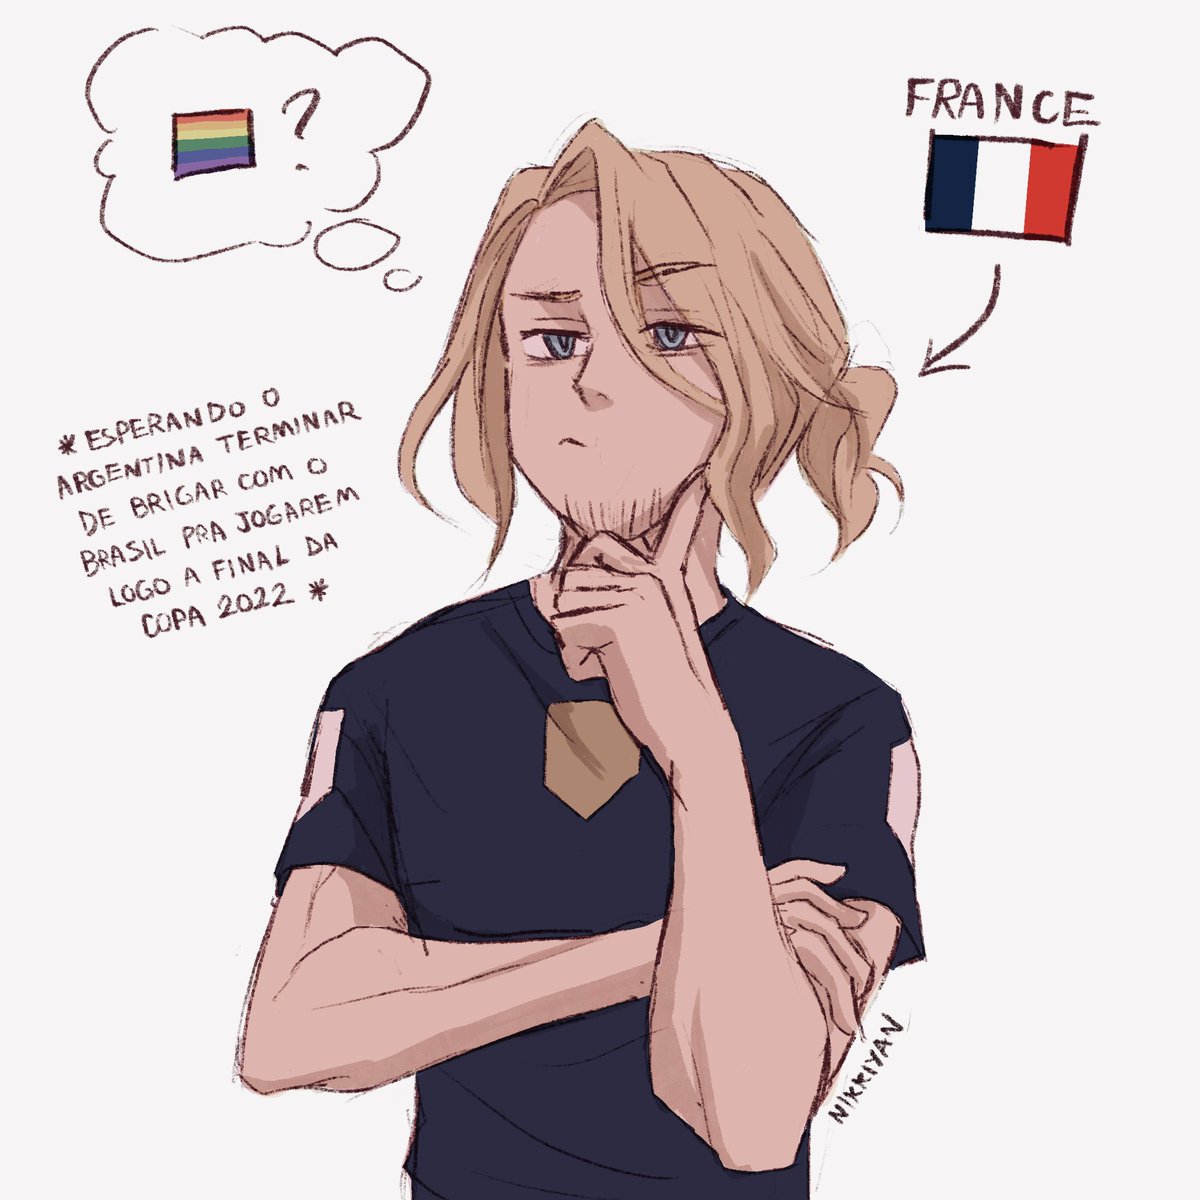 O França impaciente pro jogo, mas curioso pela situação hahahaha Já já a final França vs Argentina da Copa, minha gent! 